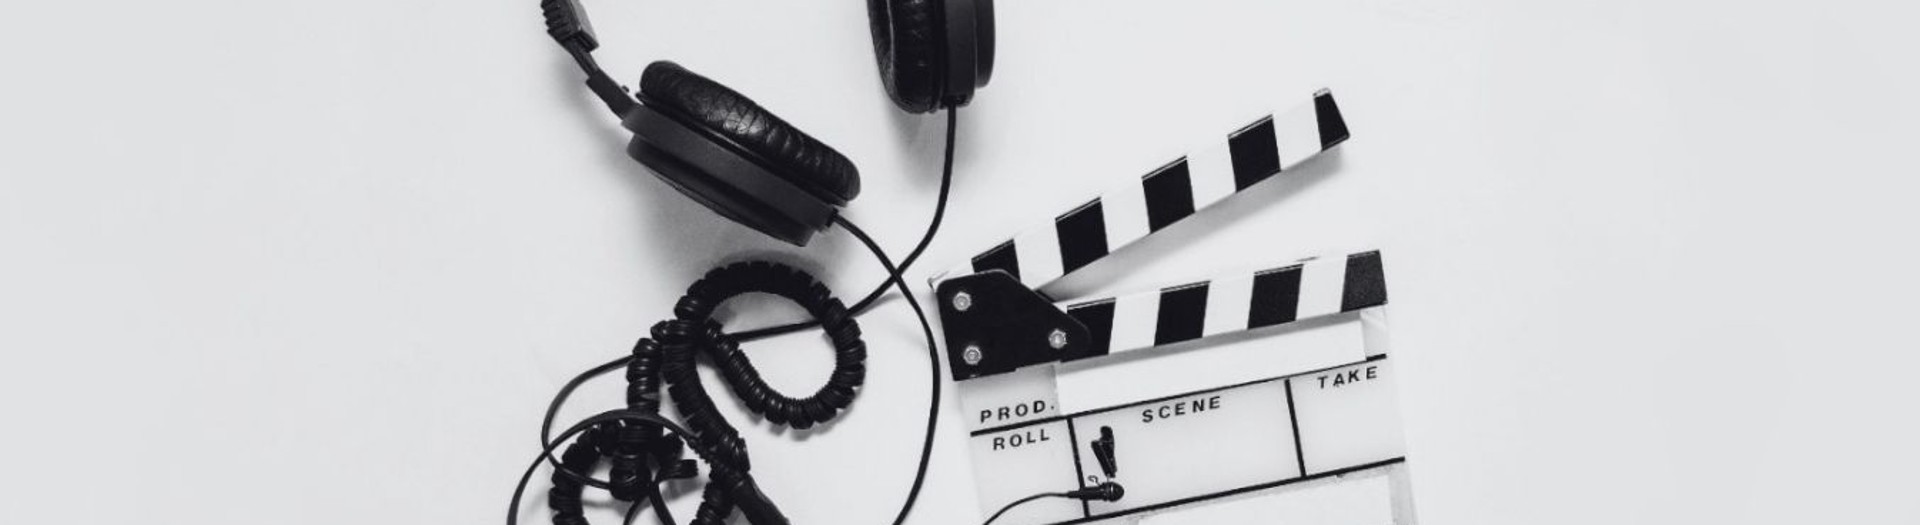 Kopfhörer und Filmklappe vor weißem Hintergrund